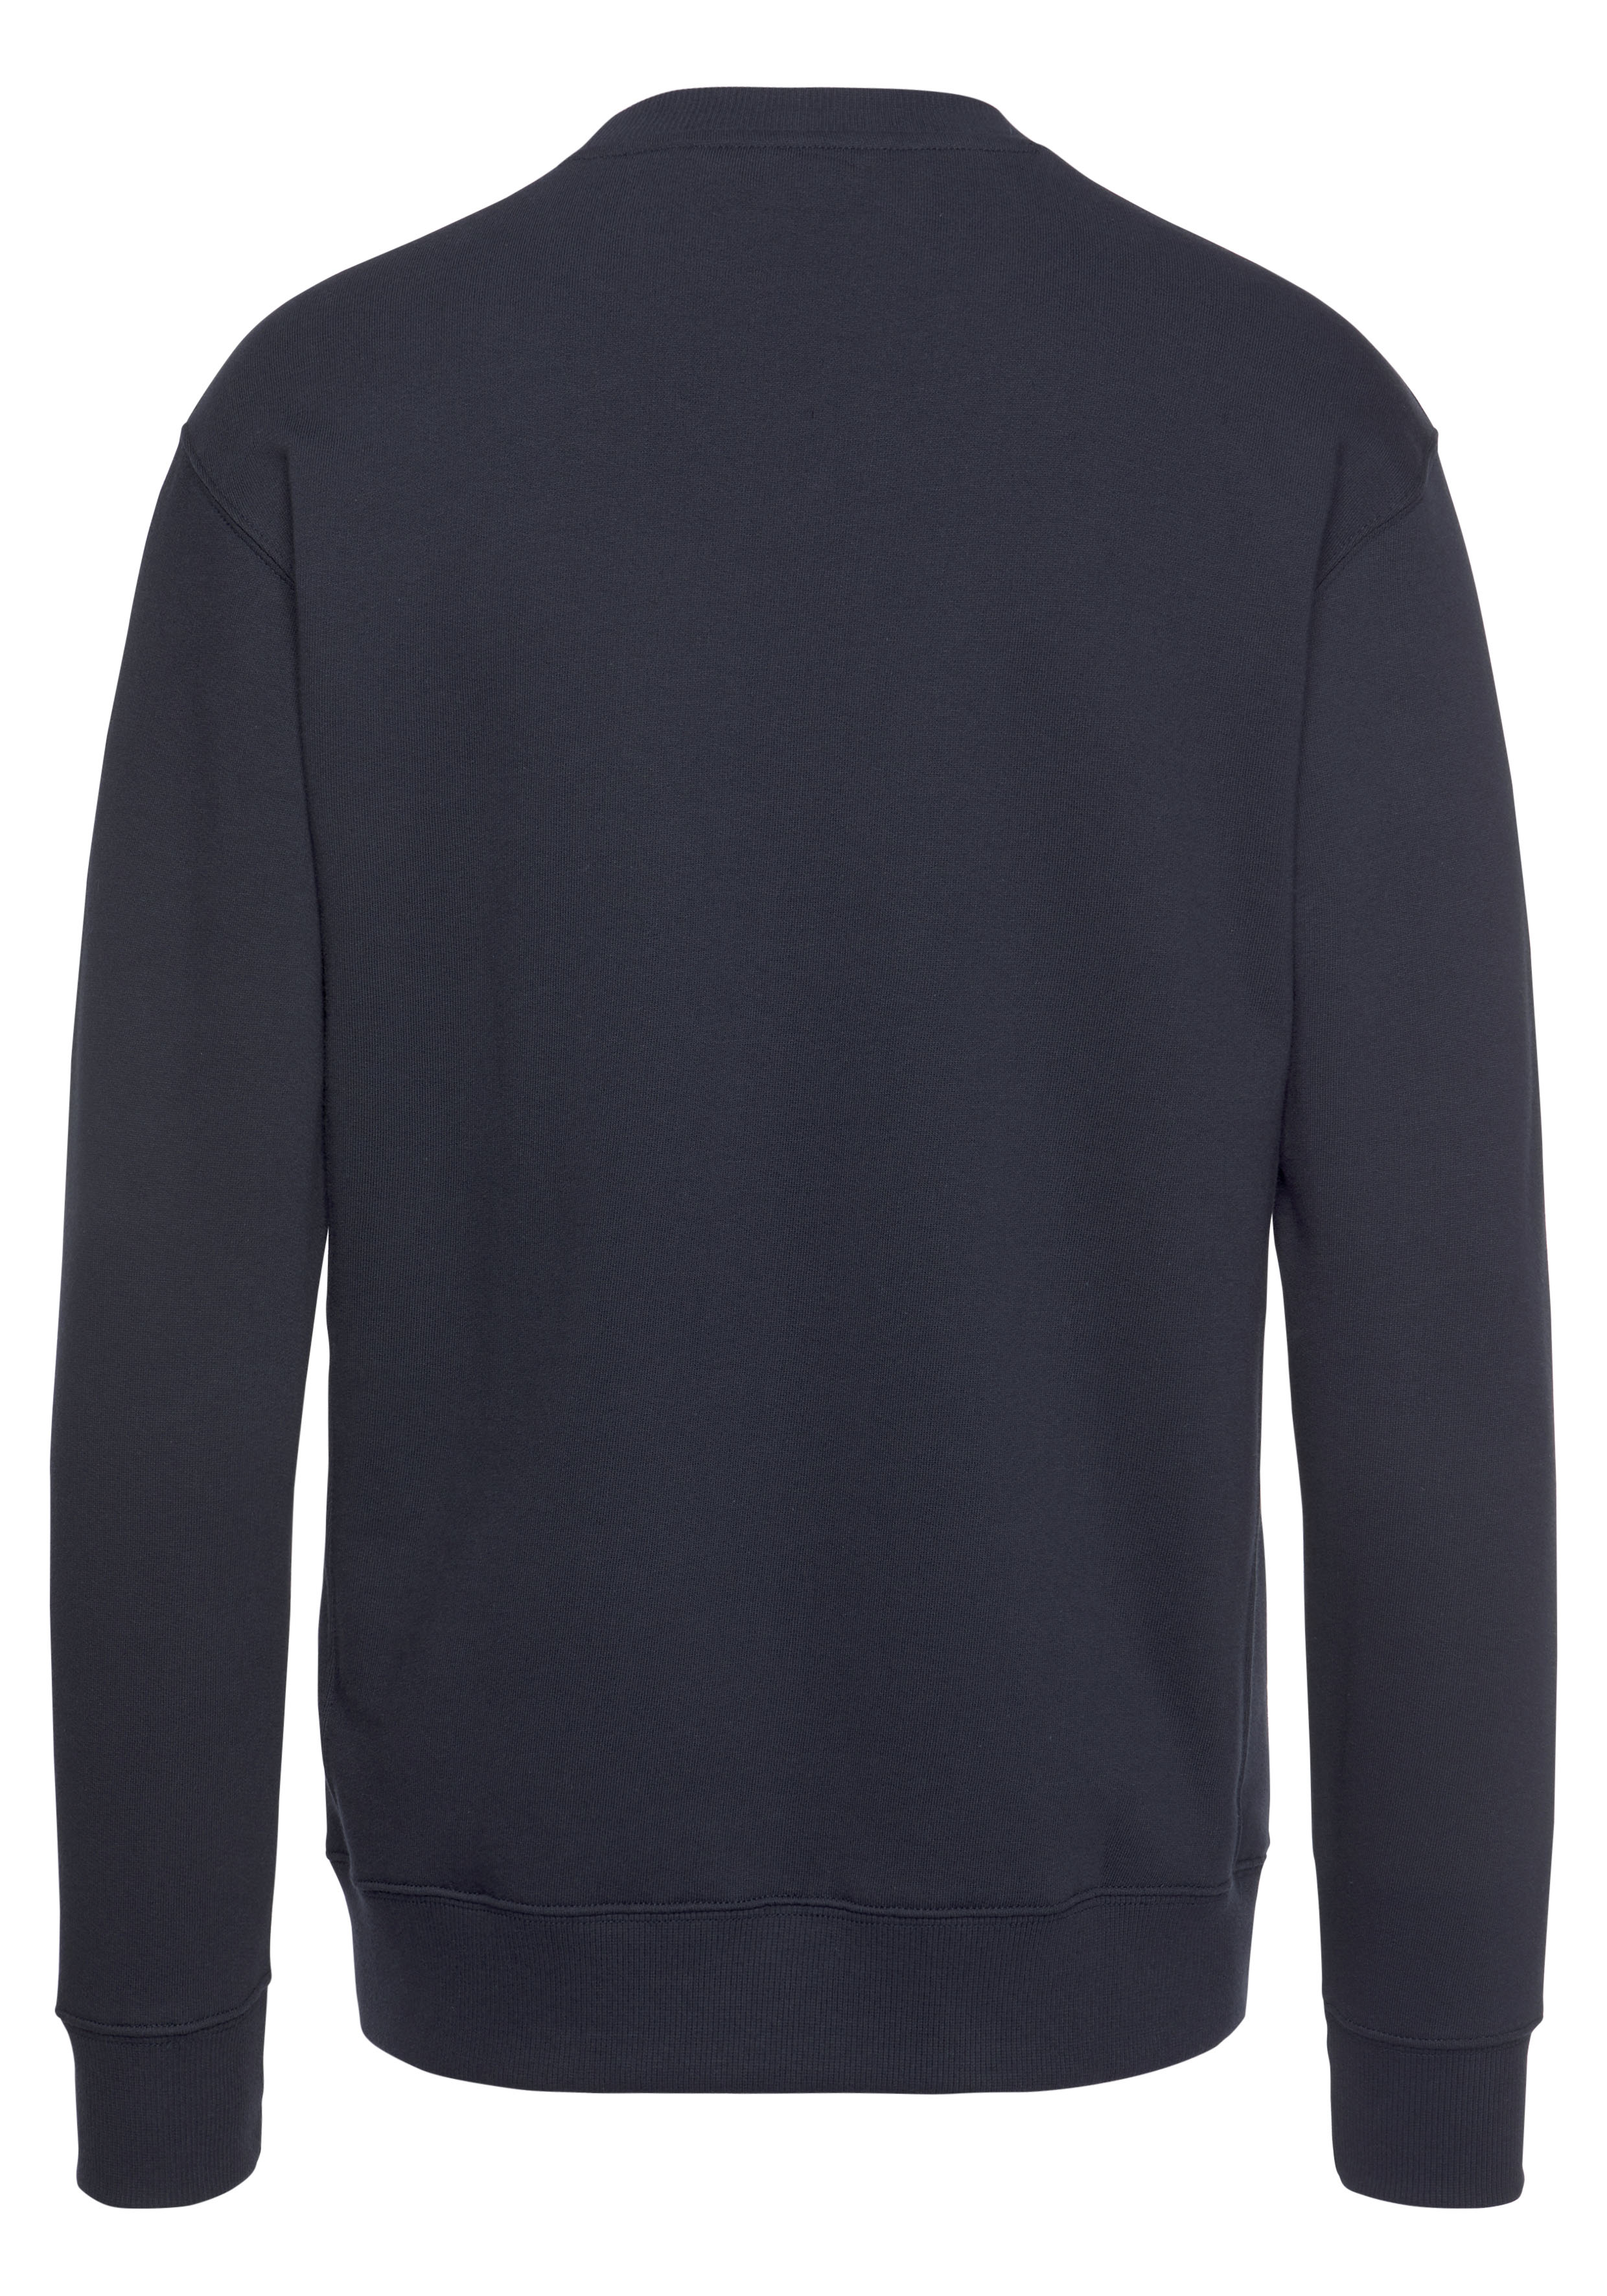 Lee Herren Rundhals Sweatshirt Plain Crew günstig online kaufen